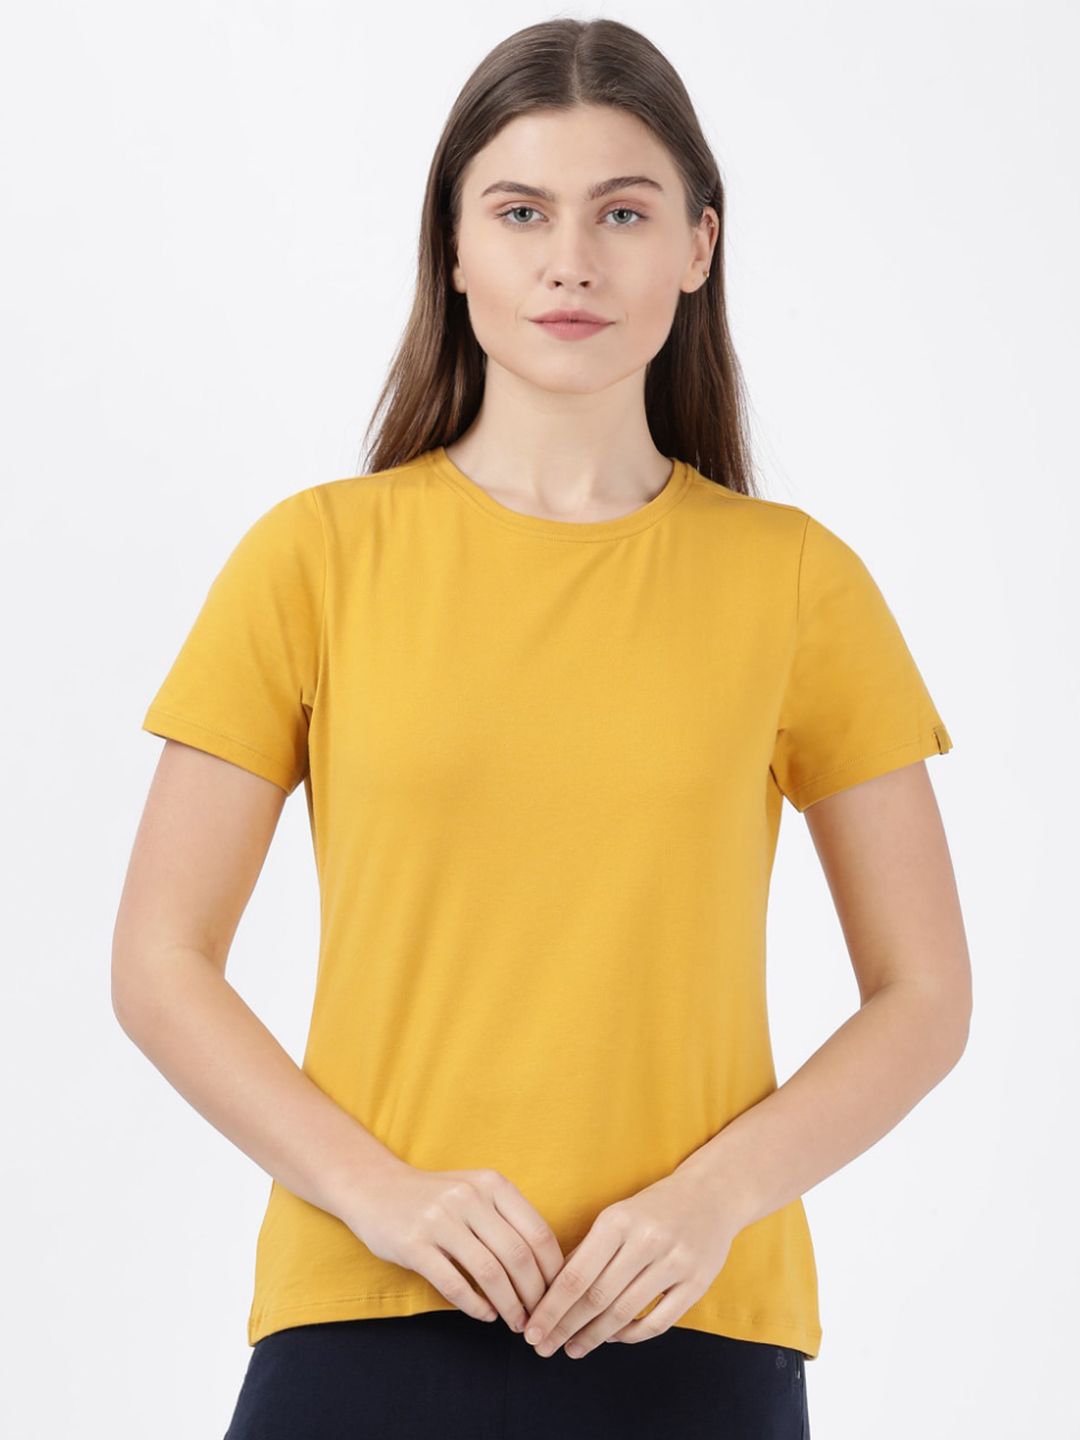 Jockey Women Yellow Solid Regular T-shirt Price in India